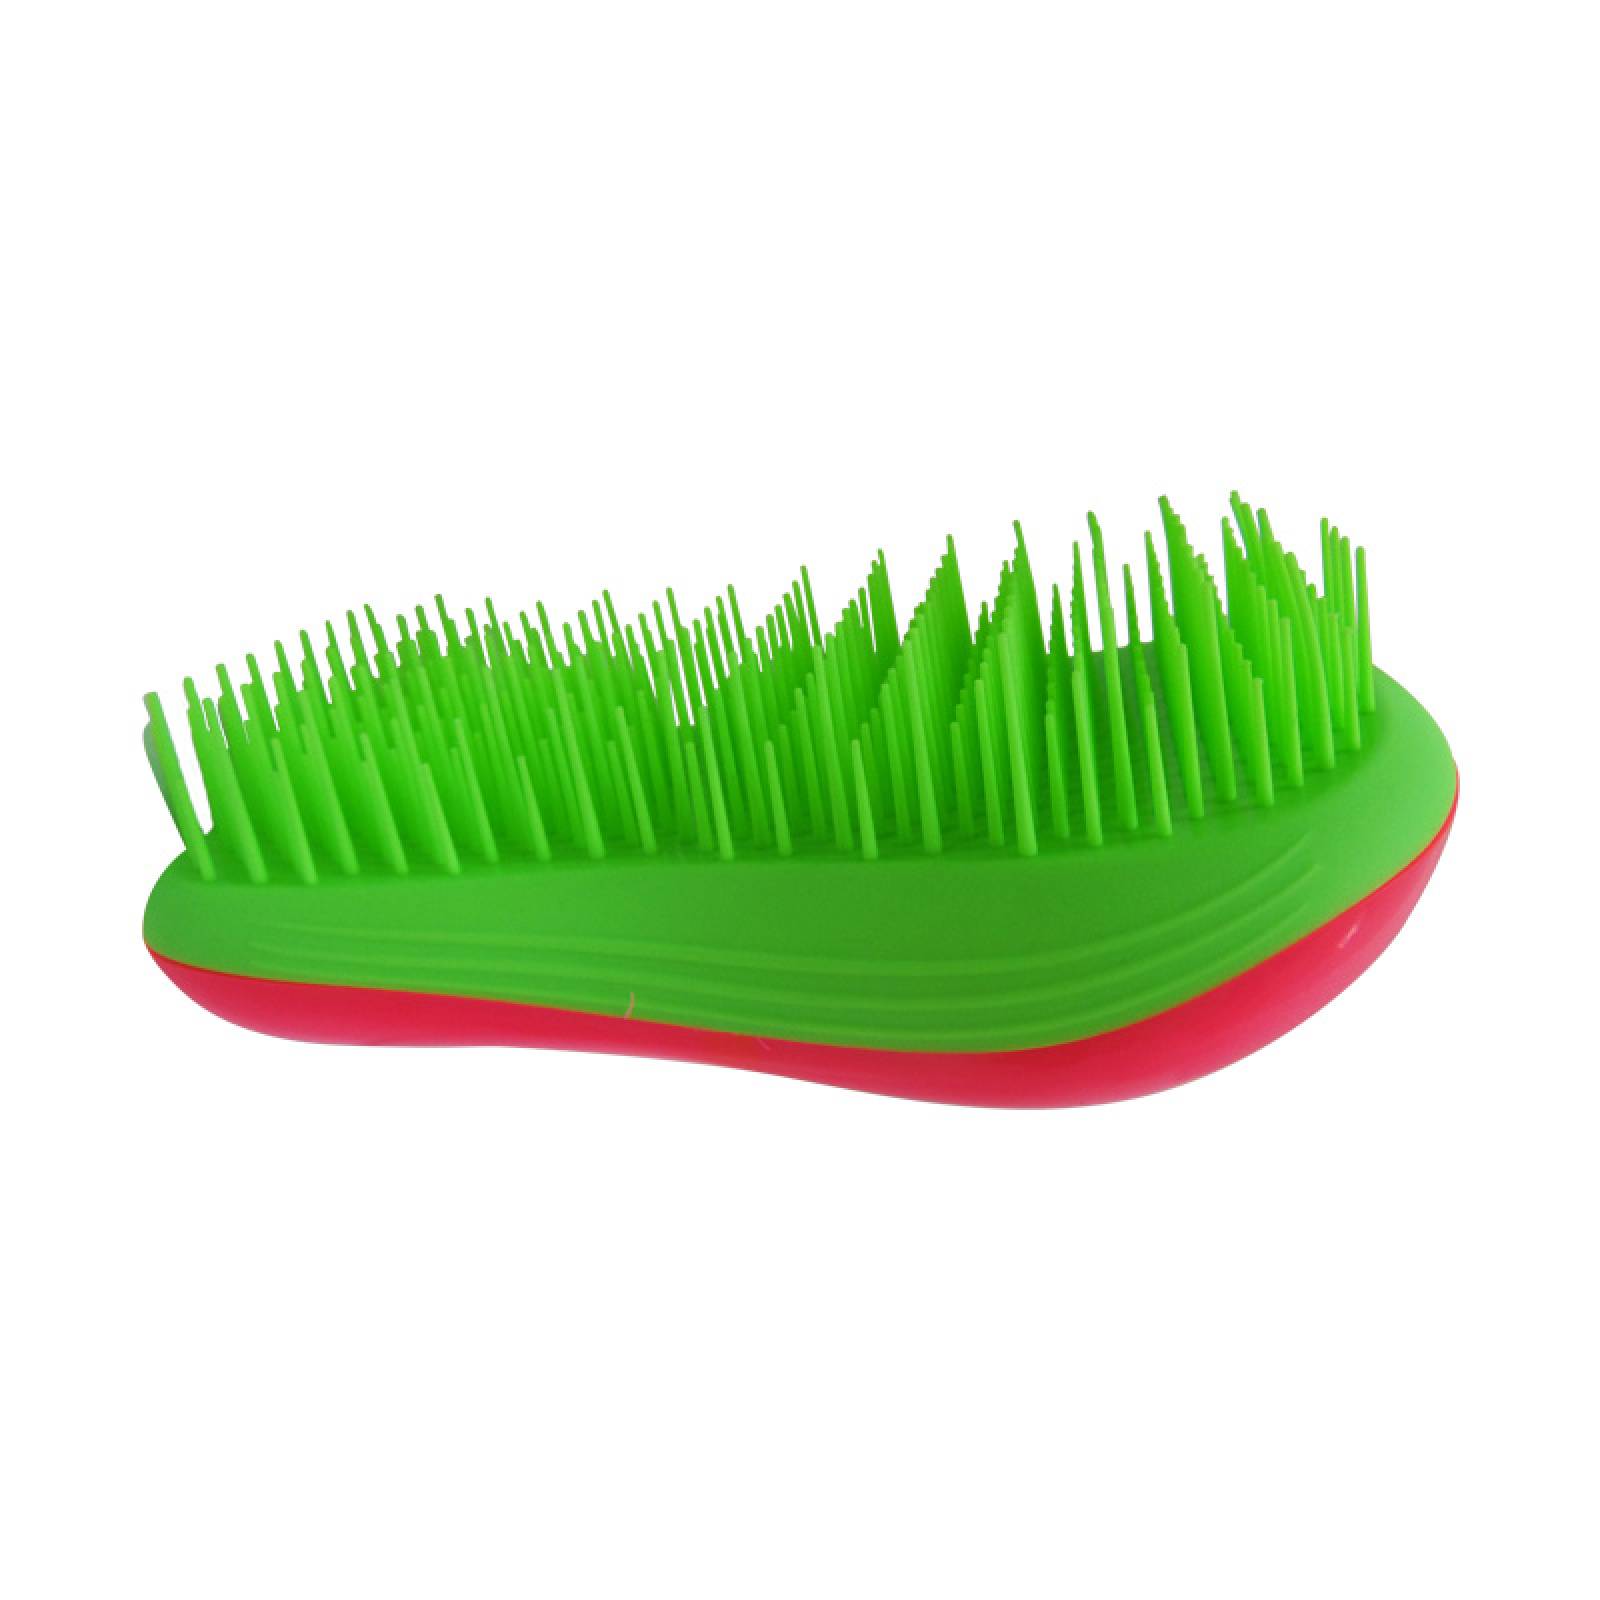 Cepillo para Desenredar Cabello Verde y Azul Candy Brush